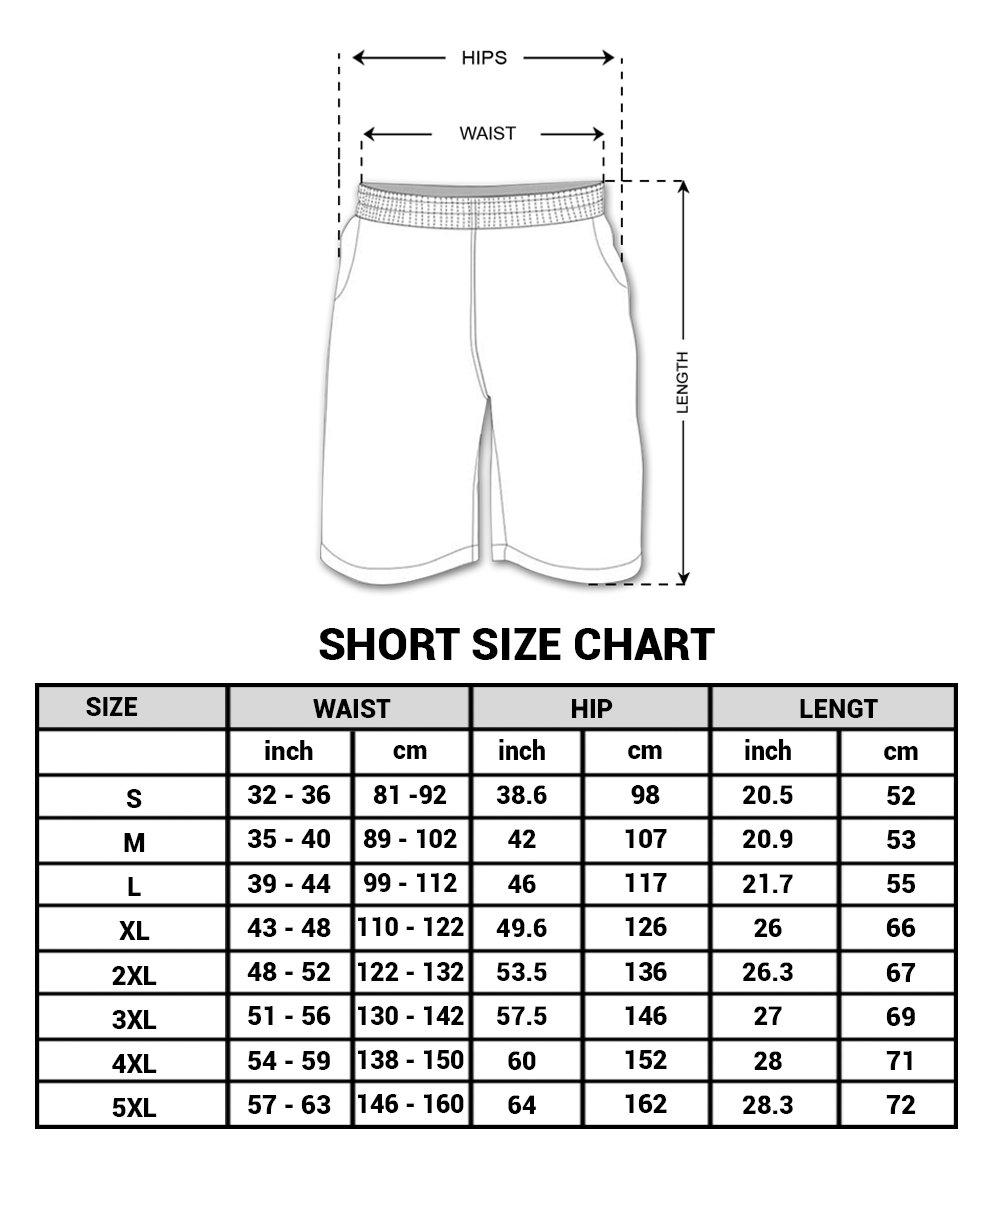 Size chart: